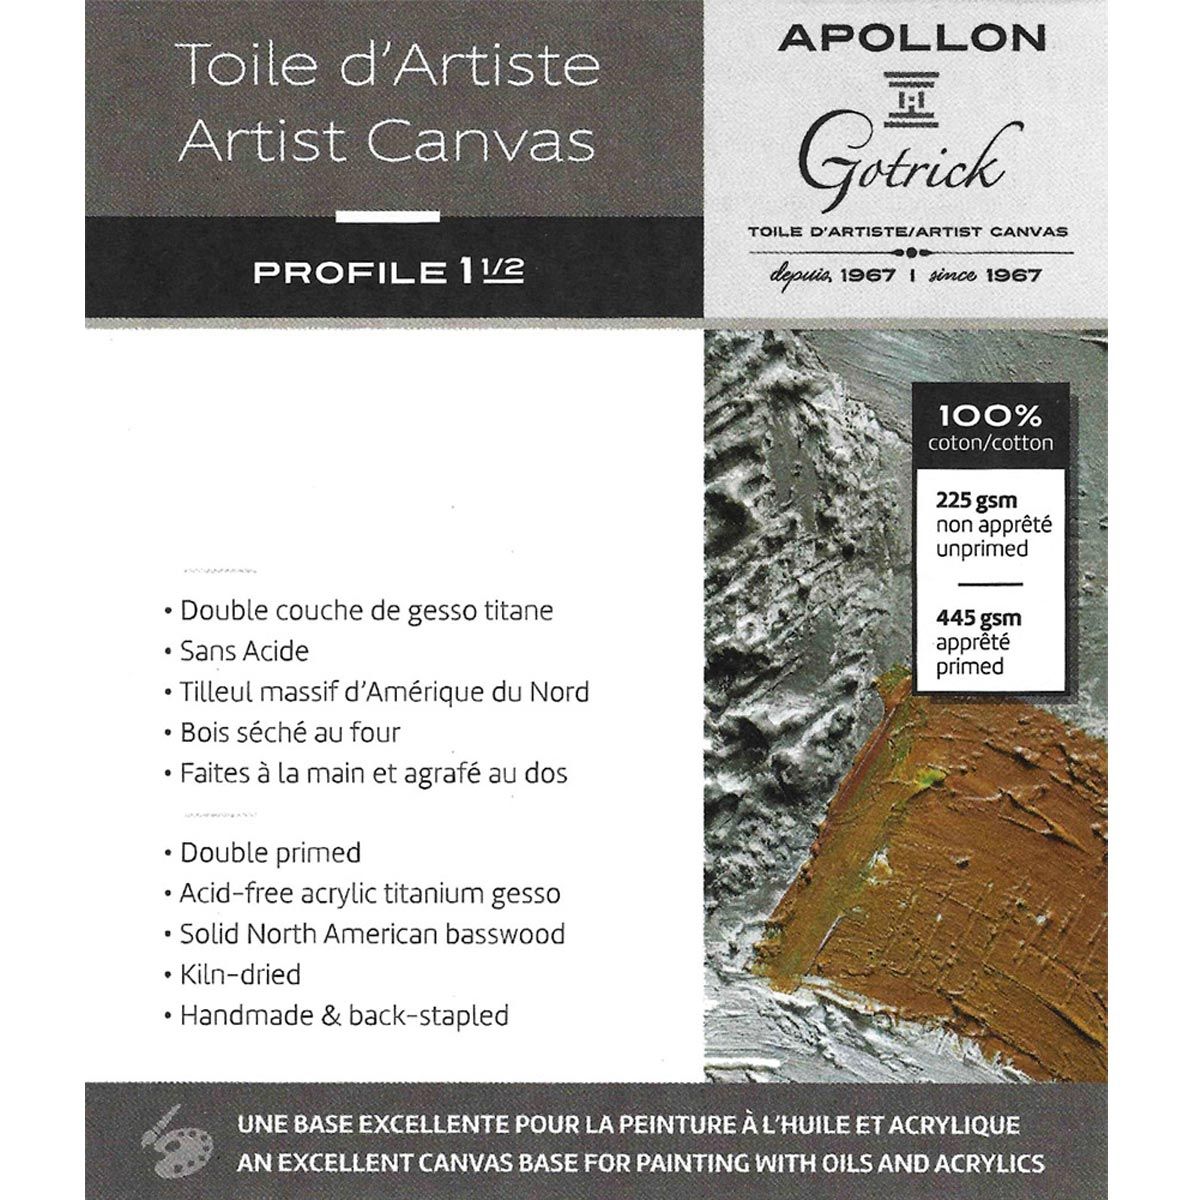 Apollon Gotrick Gallery Artist Canvas Profile 1½" - 18" x 36"